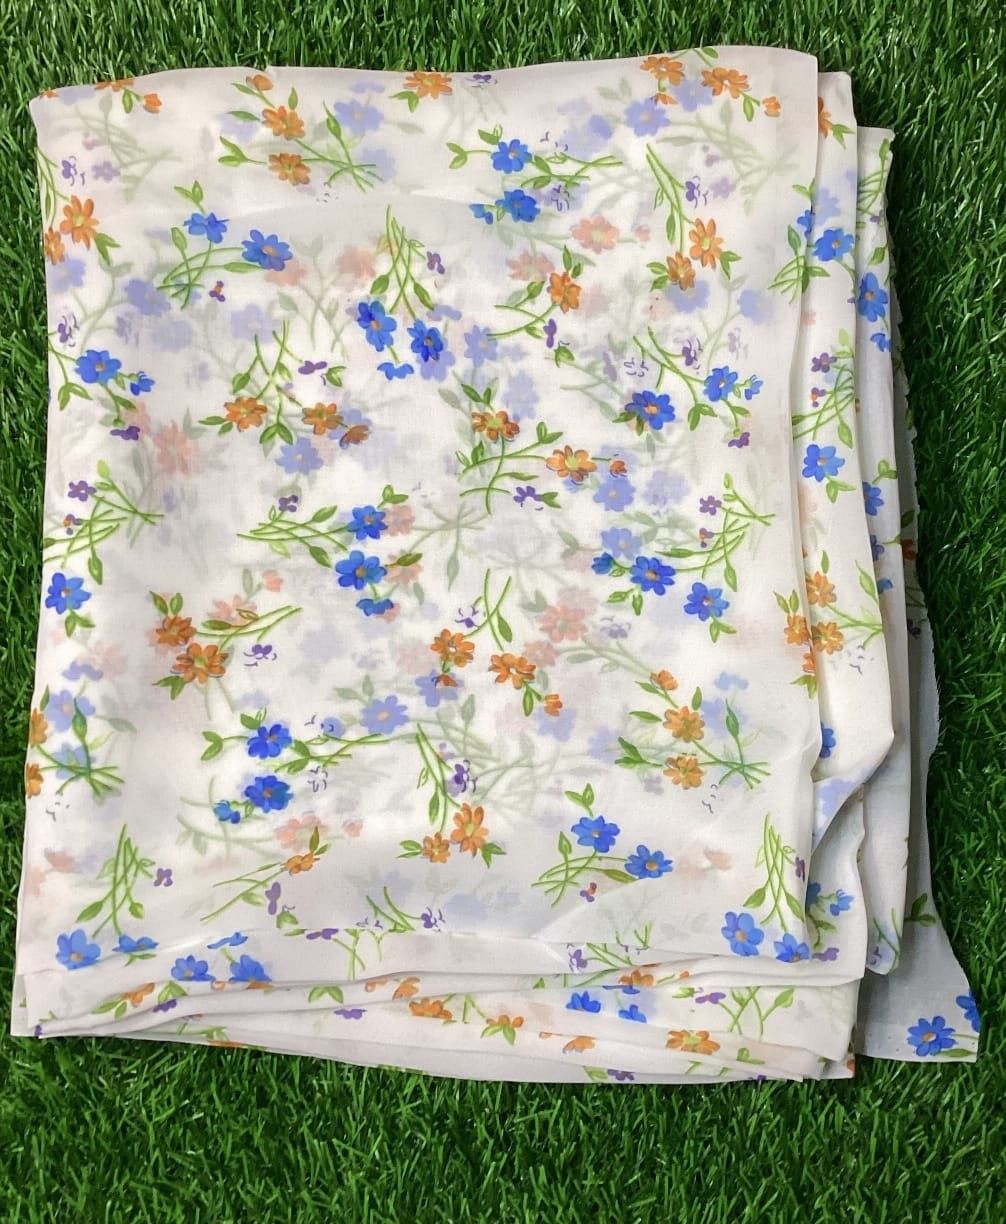 Garden tarangini saree without blouse